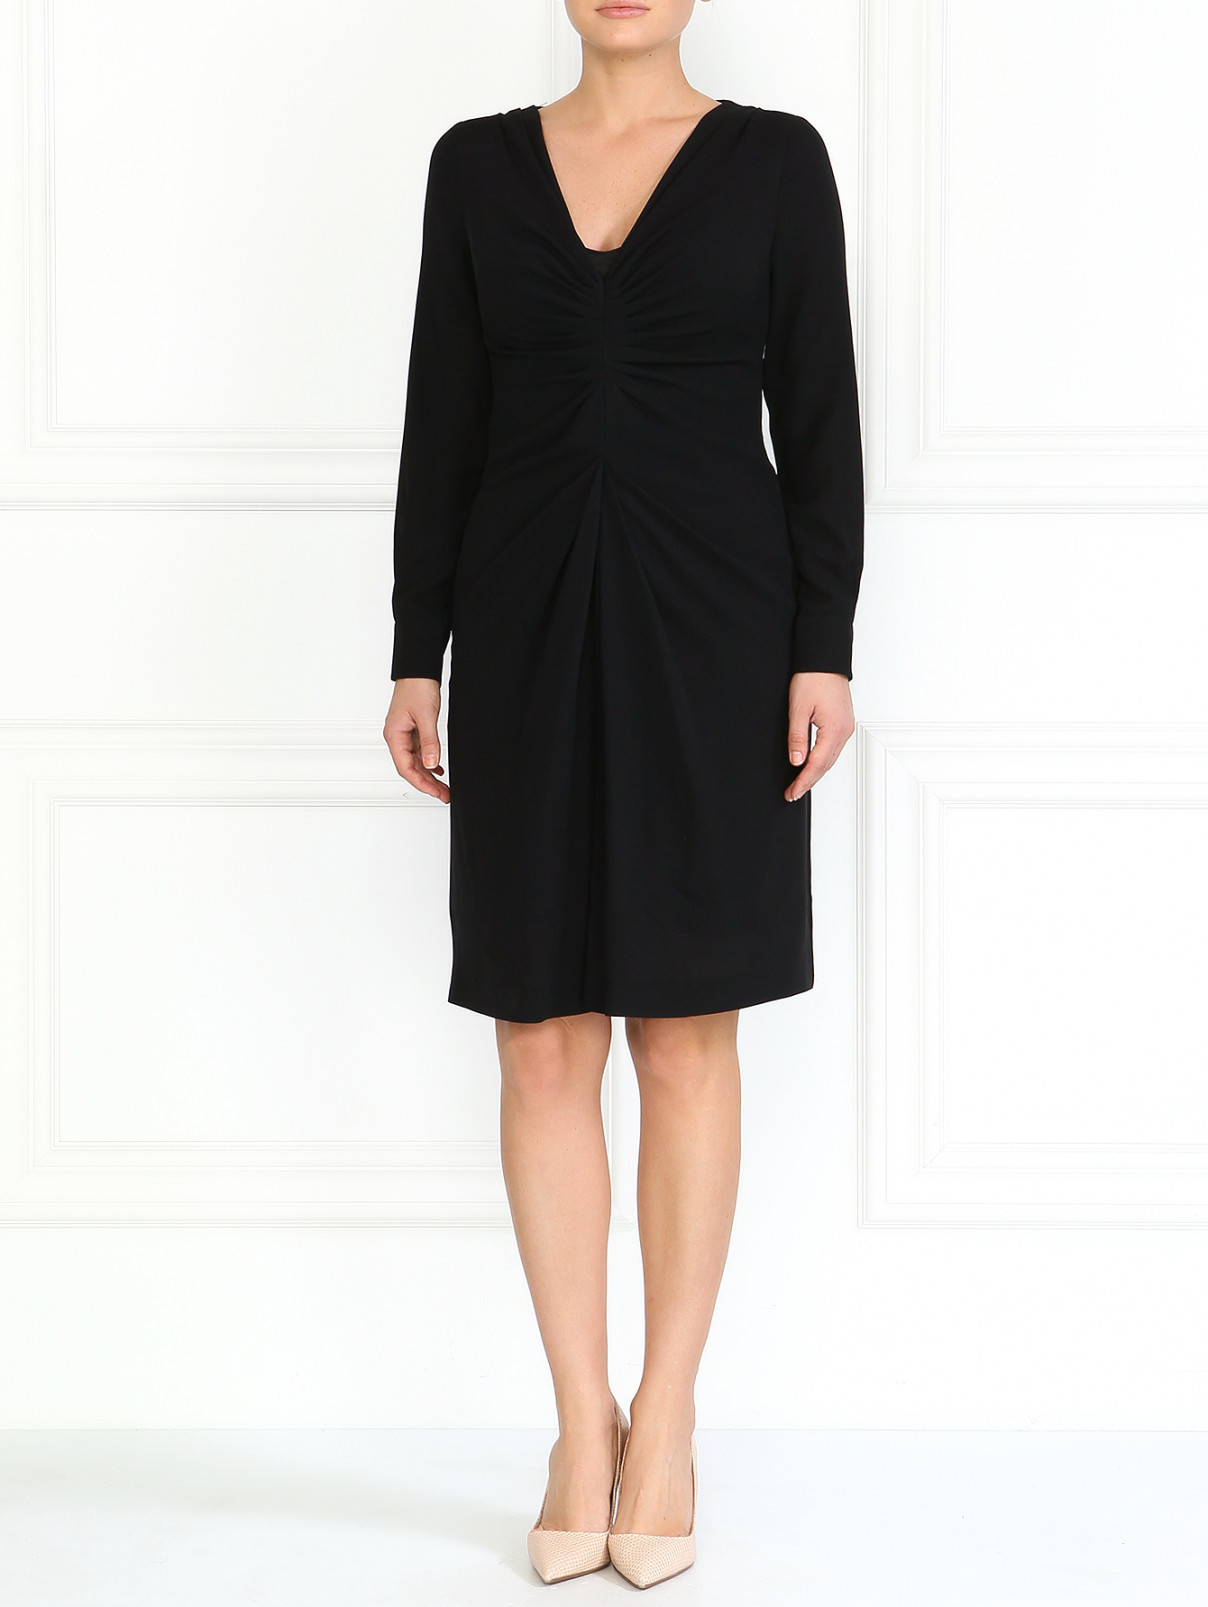 Шелковое платье Moschino  –  Модель Общий вид  – Цвет:  Черный